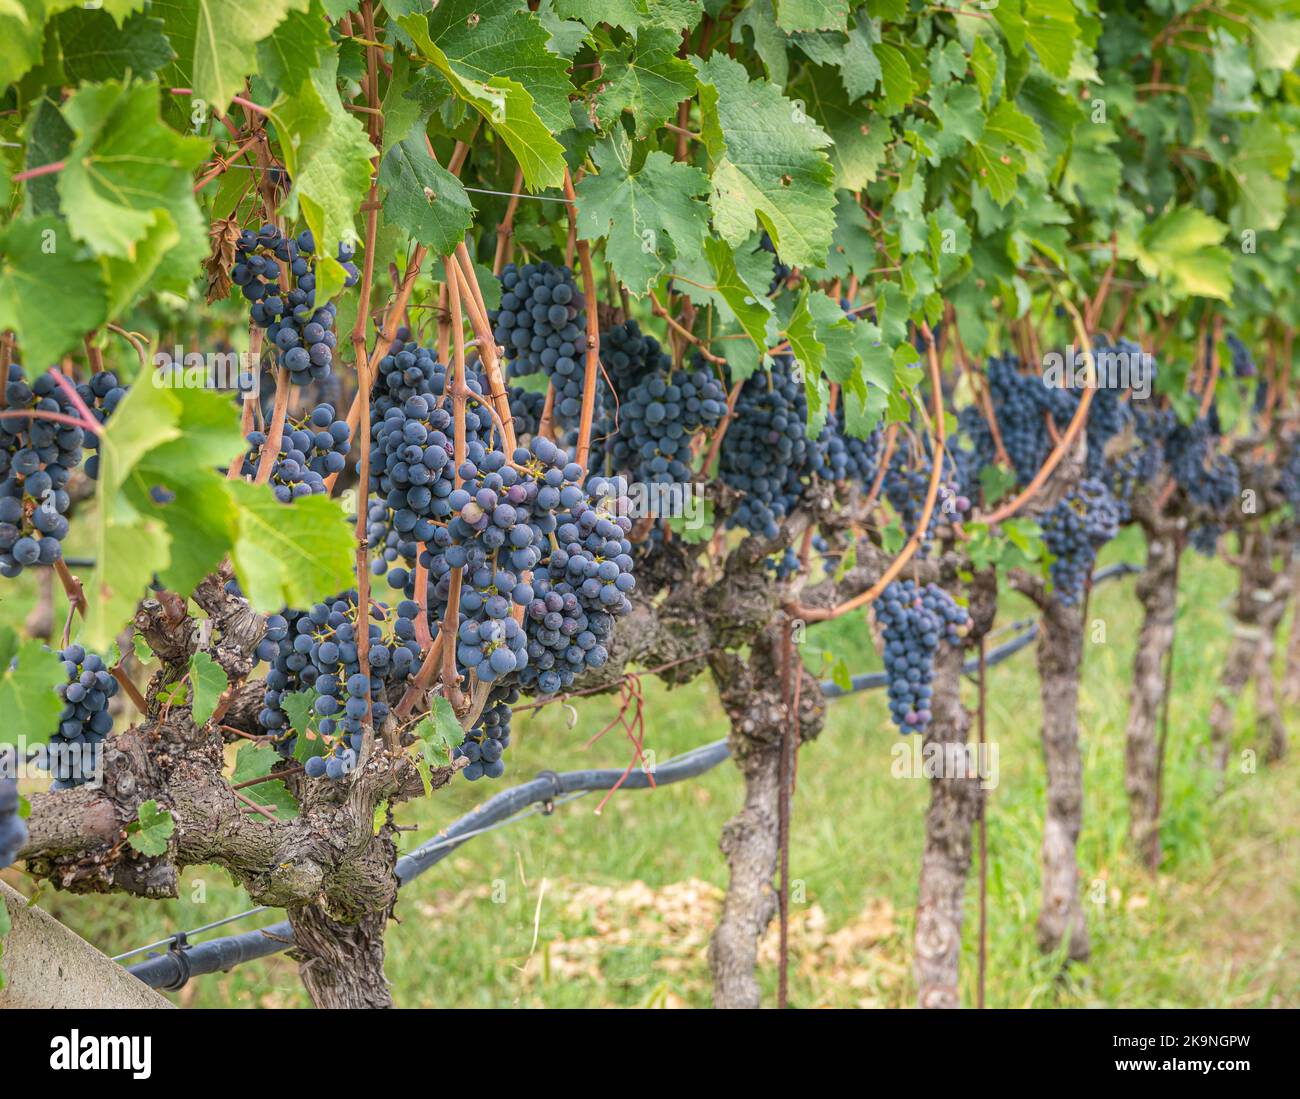 Uva Lagrein. Lagrein è un vitigno di vino rosso originario delle valli dell'Alto Adige, nel nord italia. Guyot Vine Training System - Italia Foto Stock